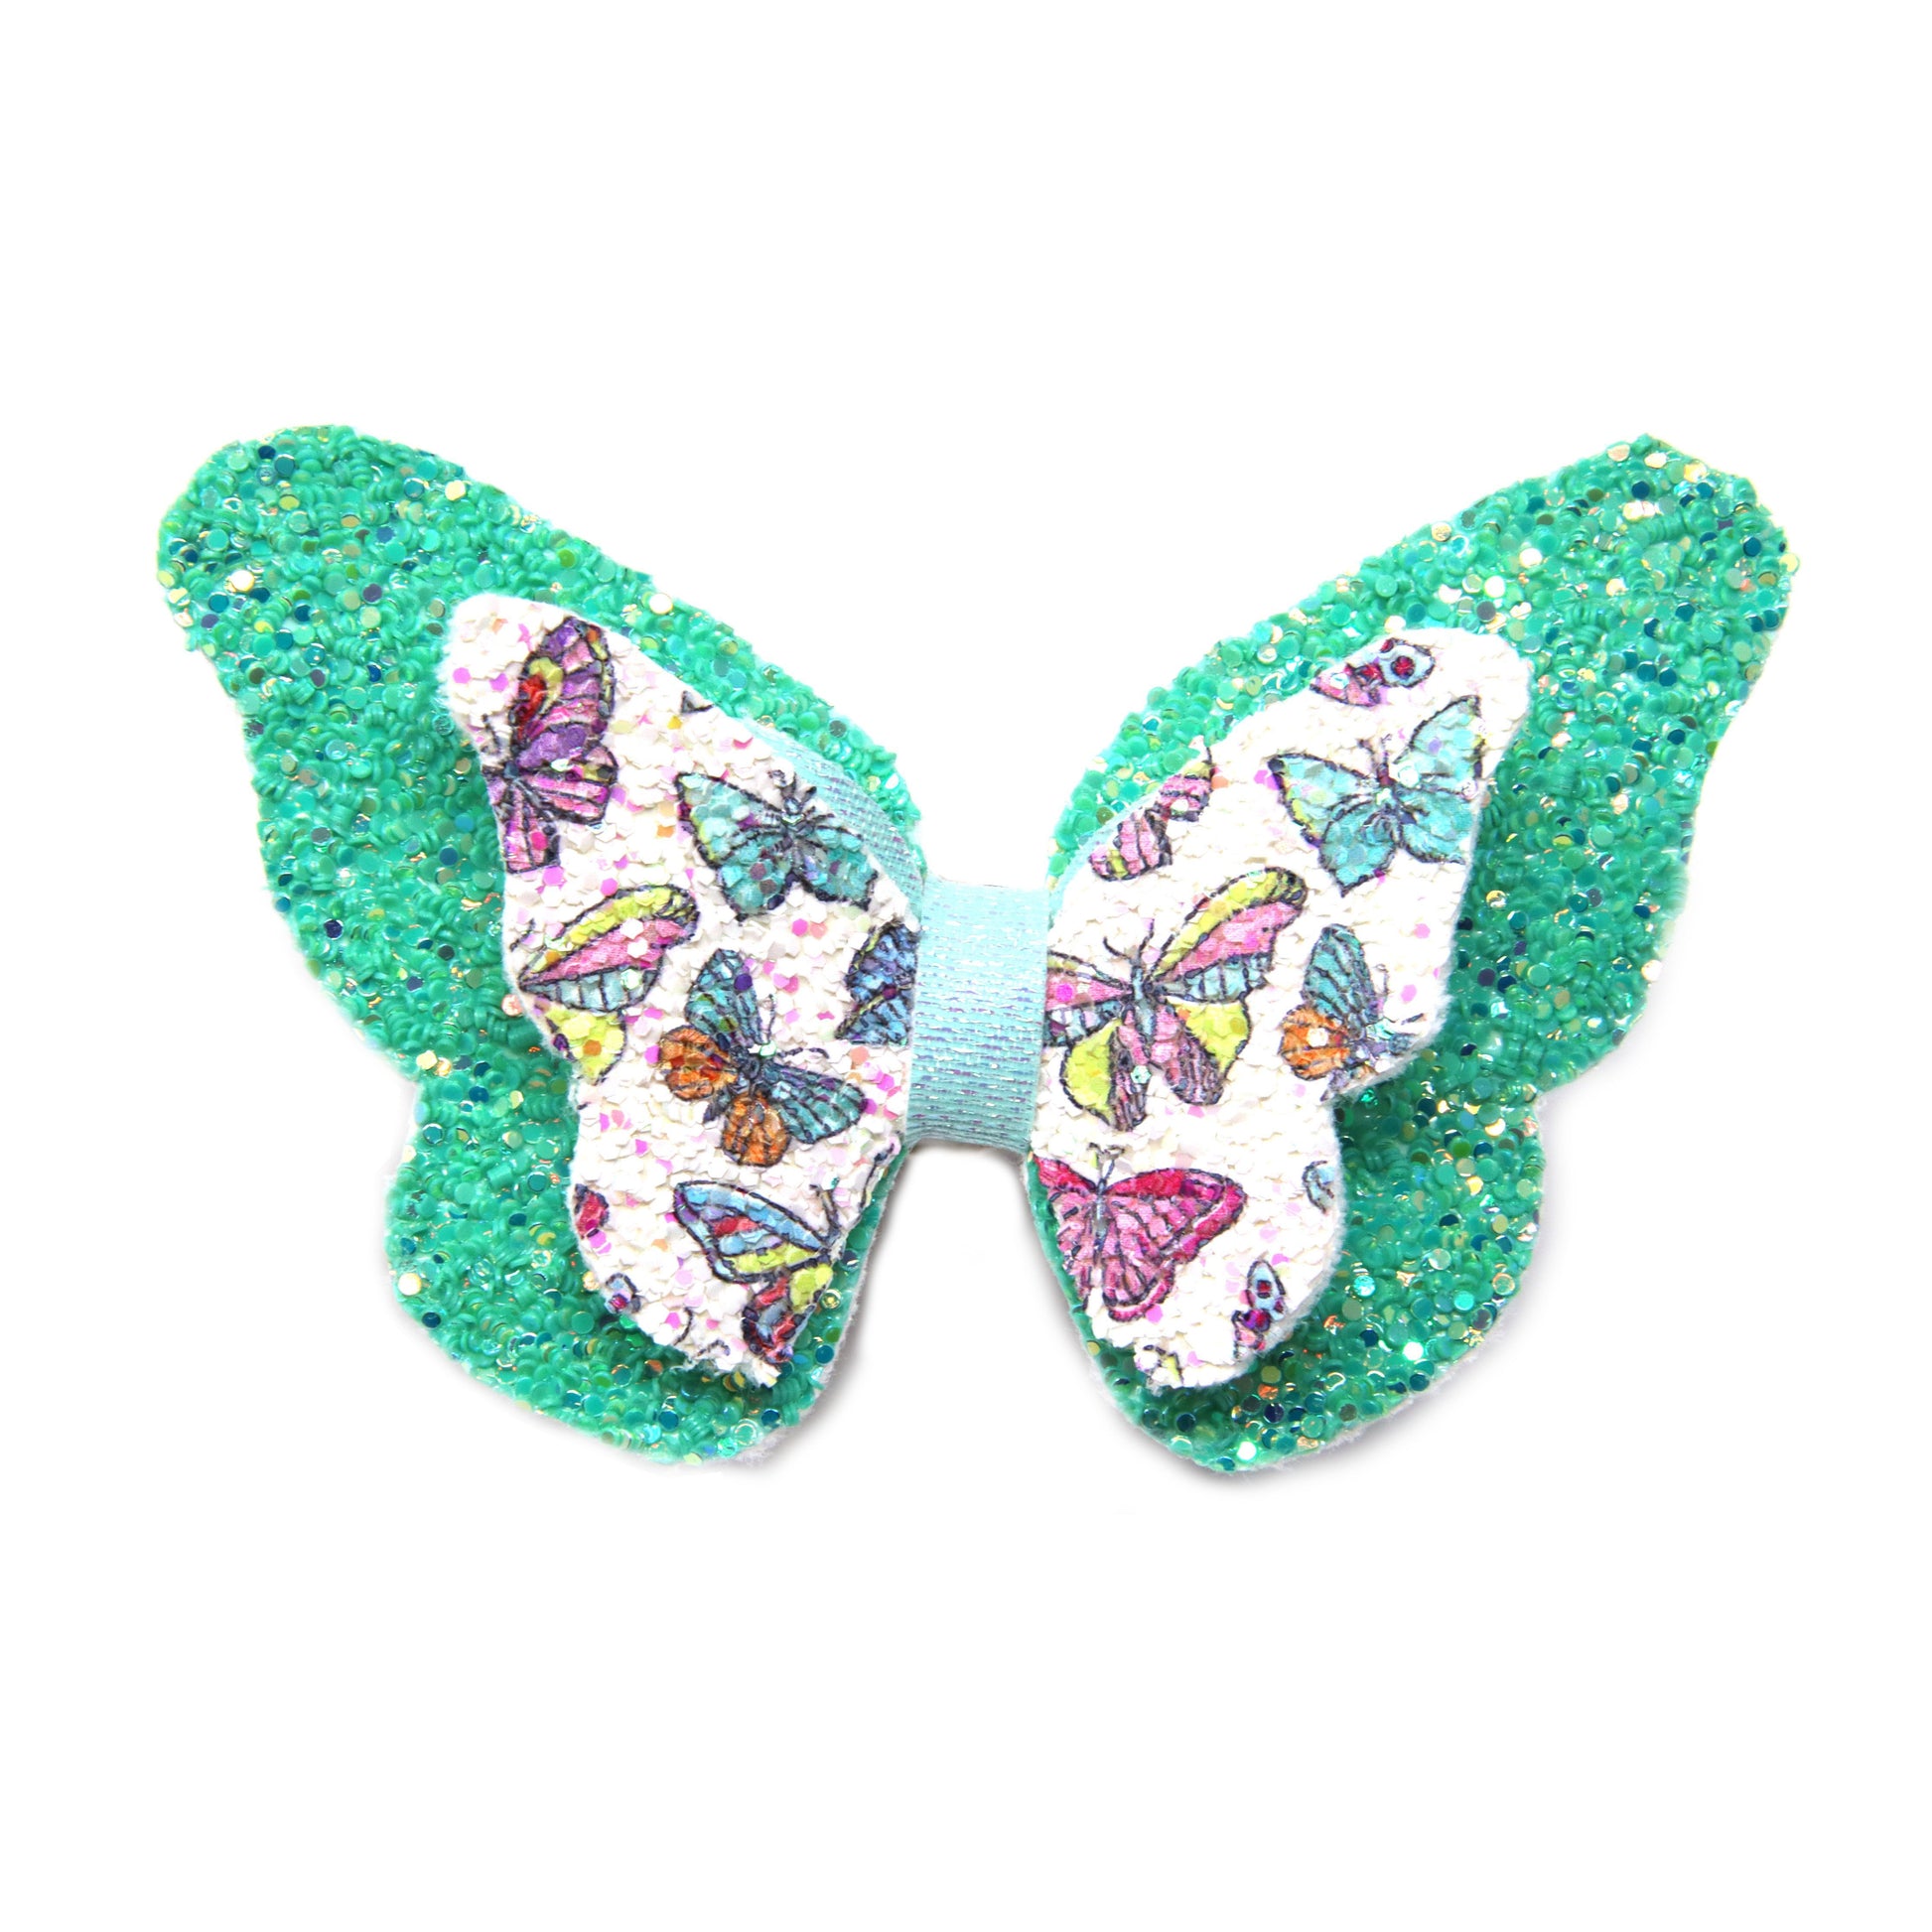 3.5 inch Multicolored Glitter Butterflies on Seafoam Glitter Silvermist Butterfly Bow